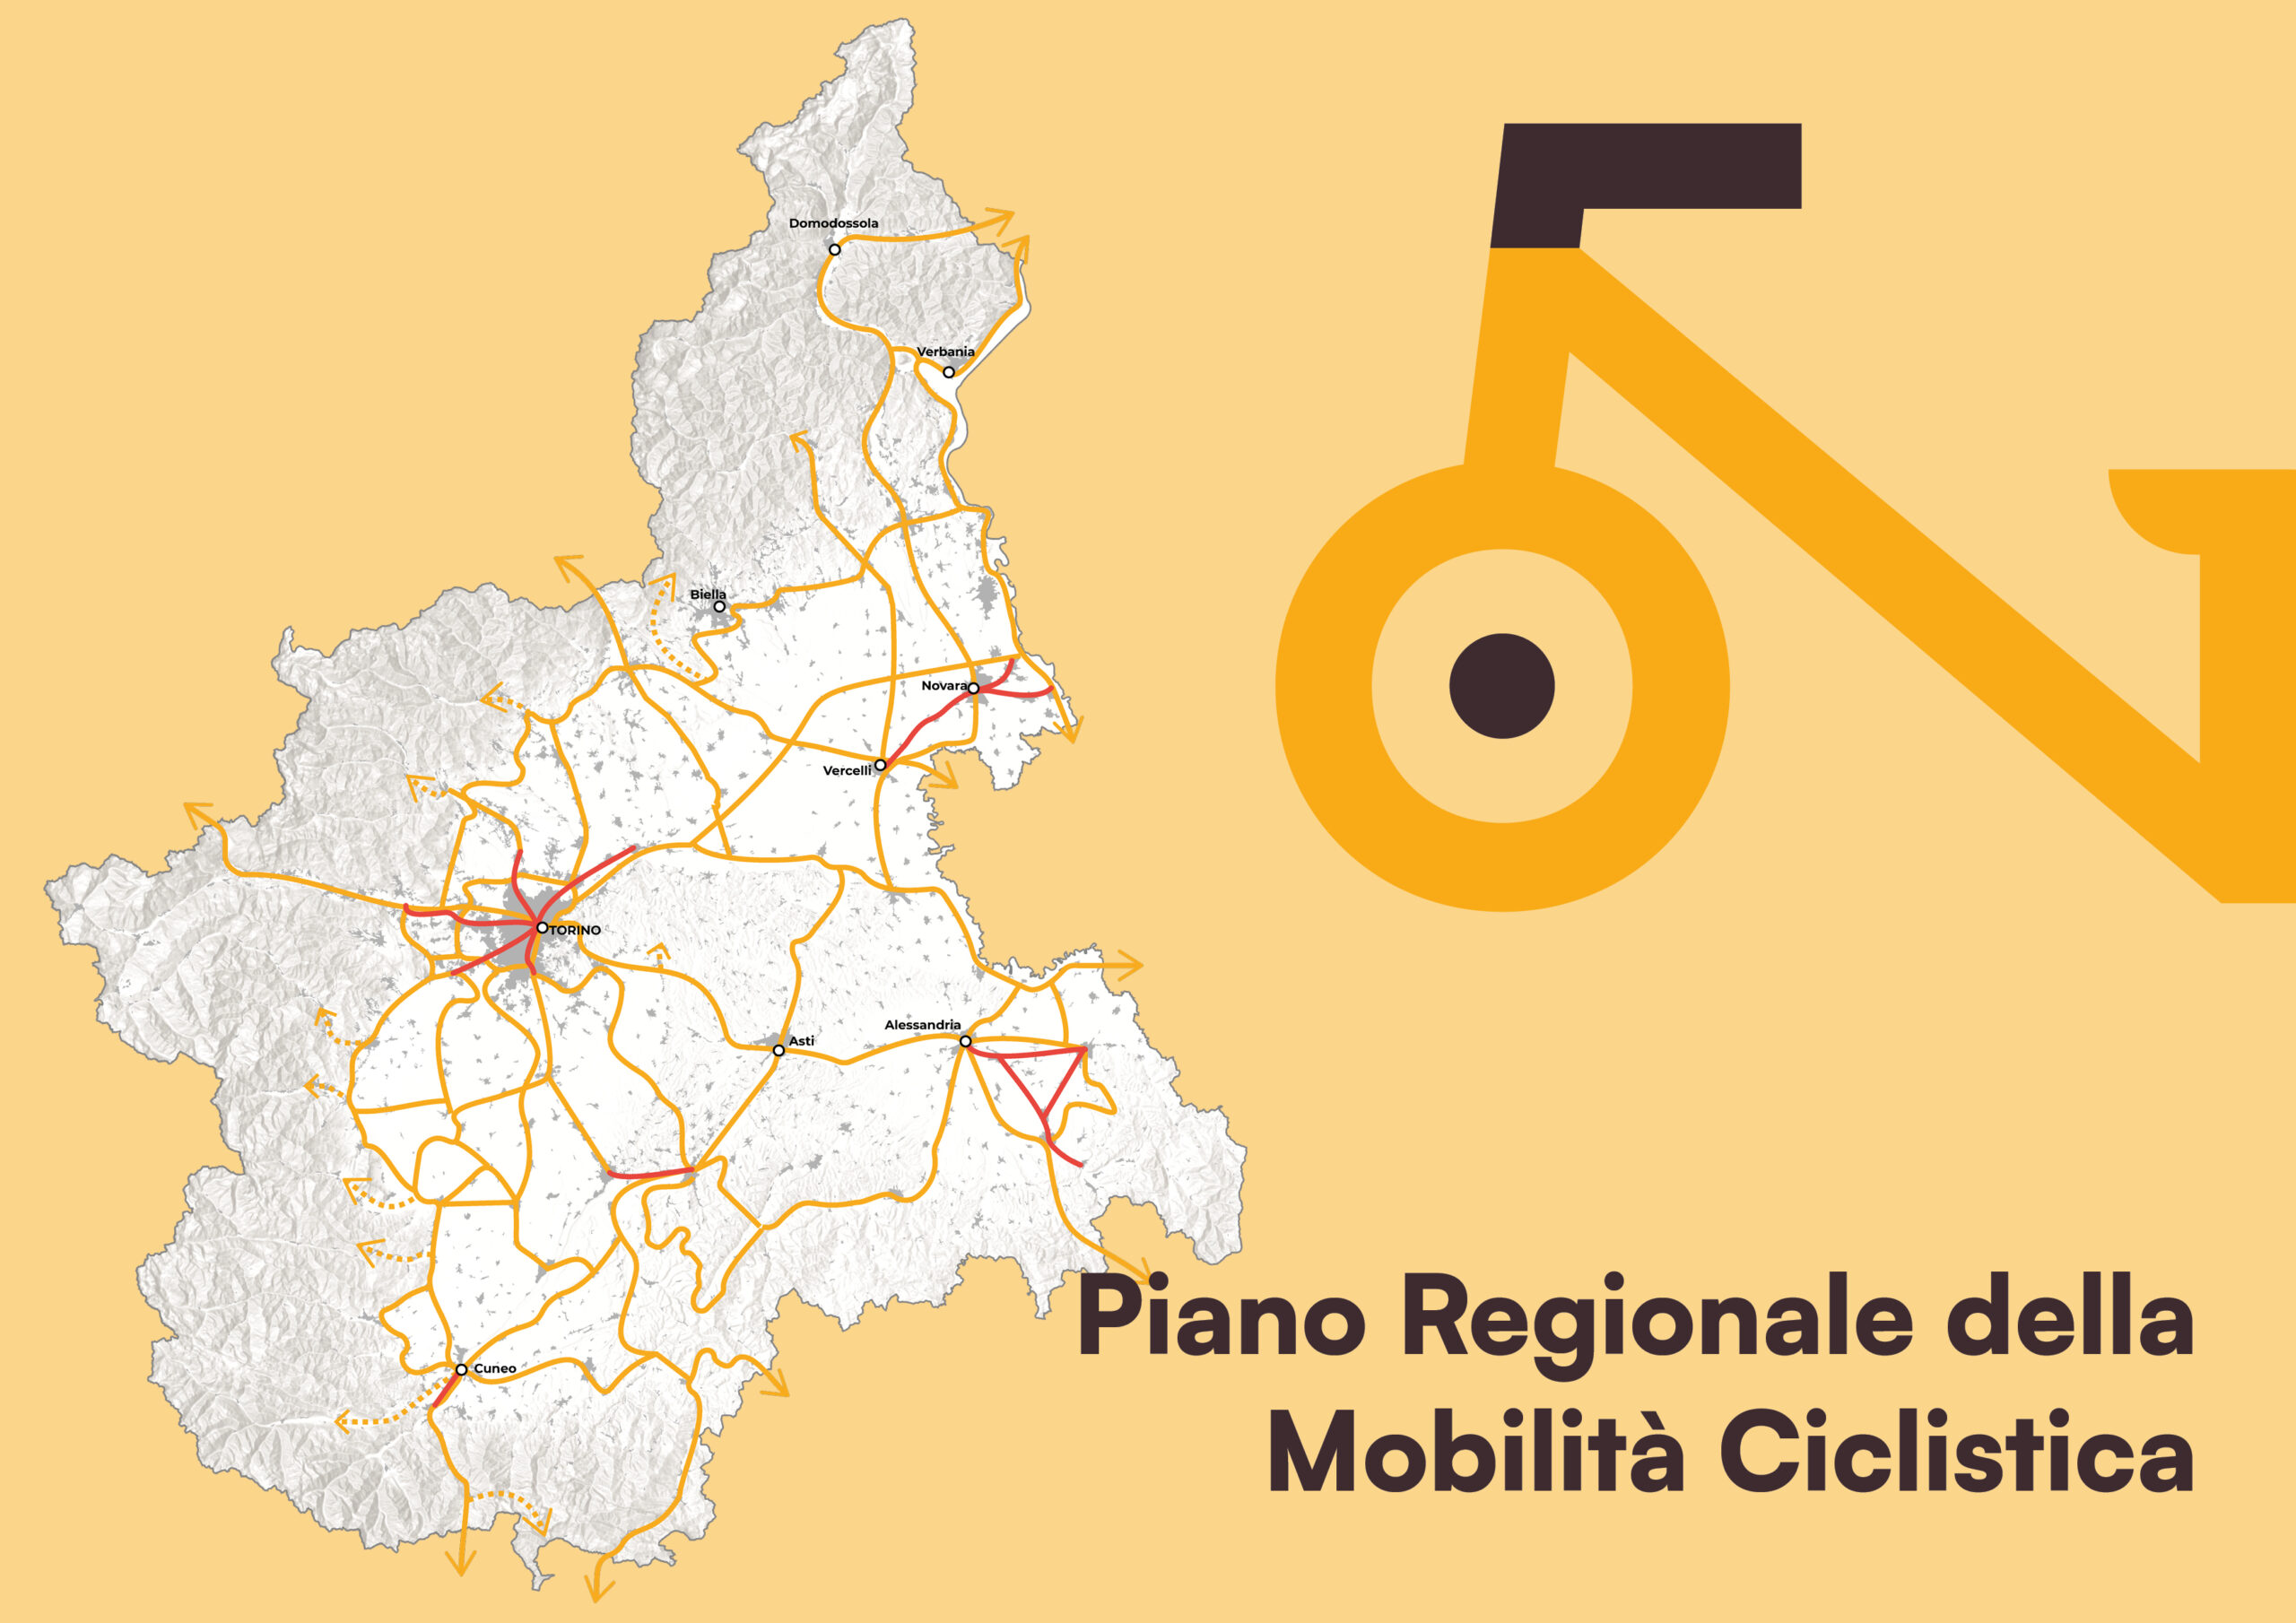 Piano Regionale della Mobilità Ciclistica (PRMC) della Regione Piemonte